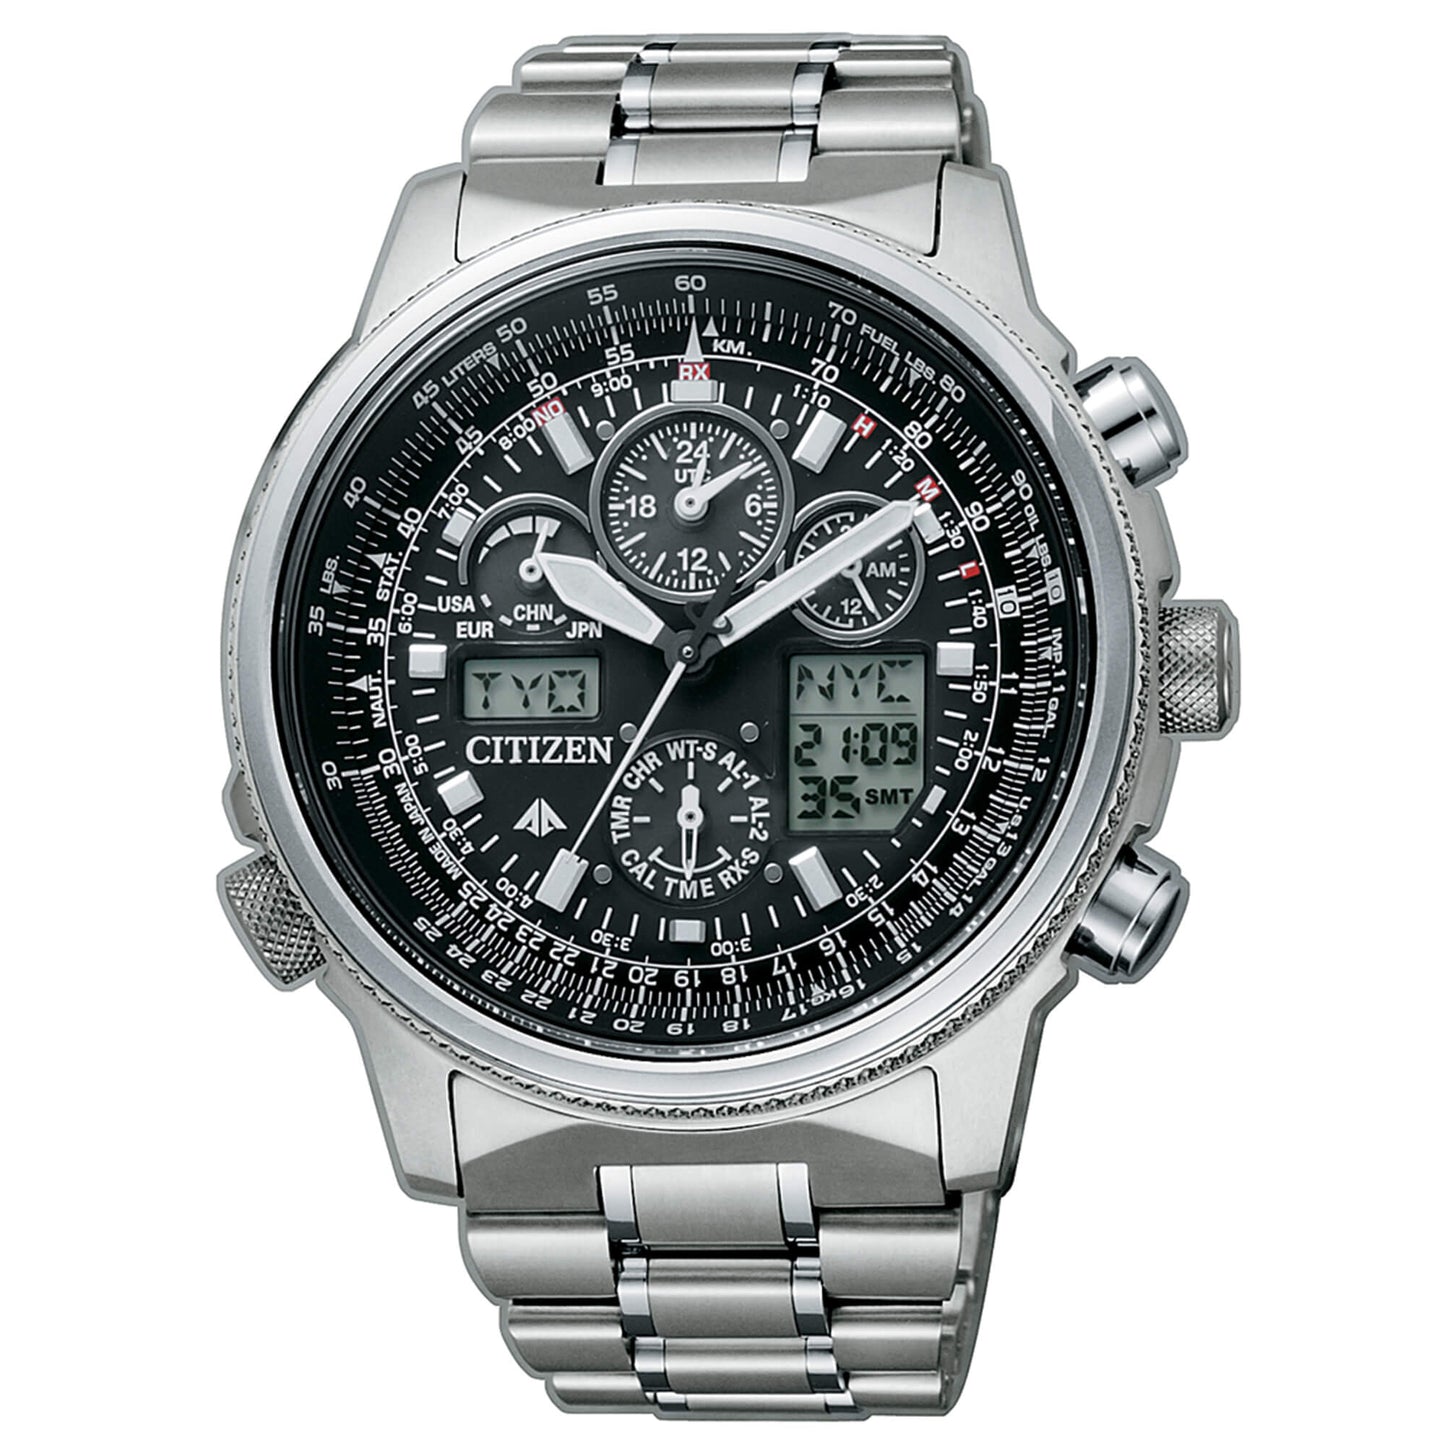 Citizen Super Pilot orologio da uomo Eco Drive radiocontrollato con cassa e cinturino in titanio e quadrante nero - Codice orologio: JY8020-52E